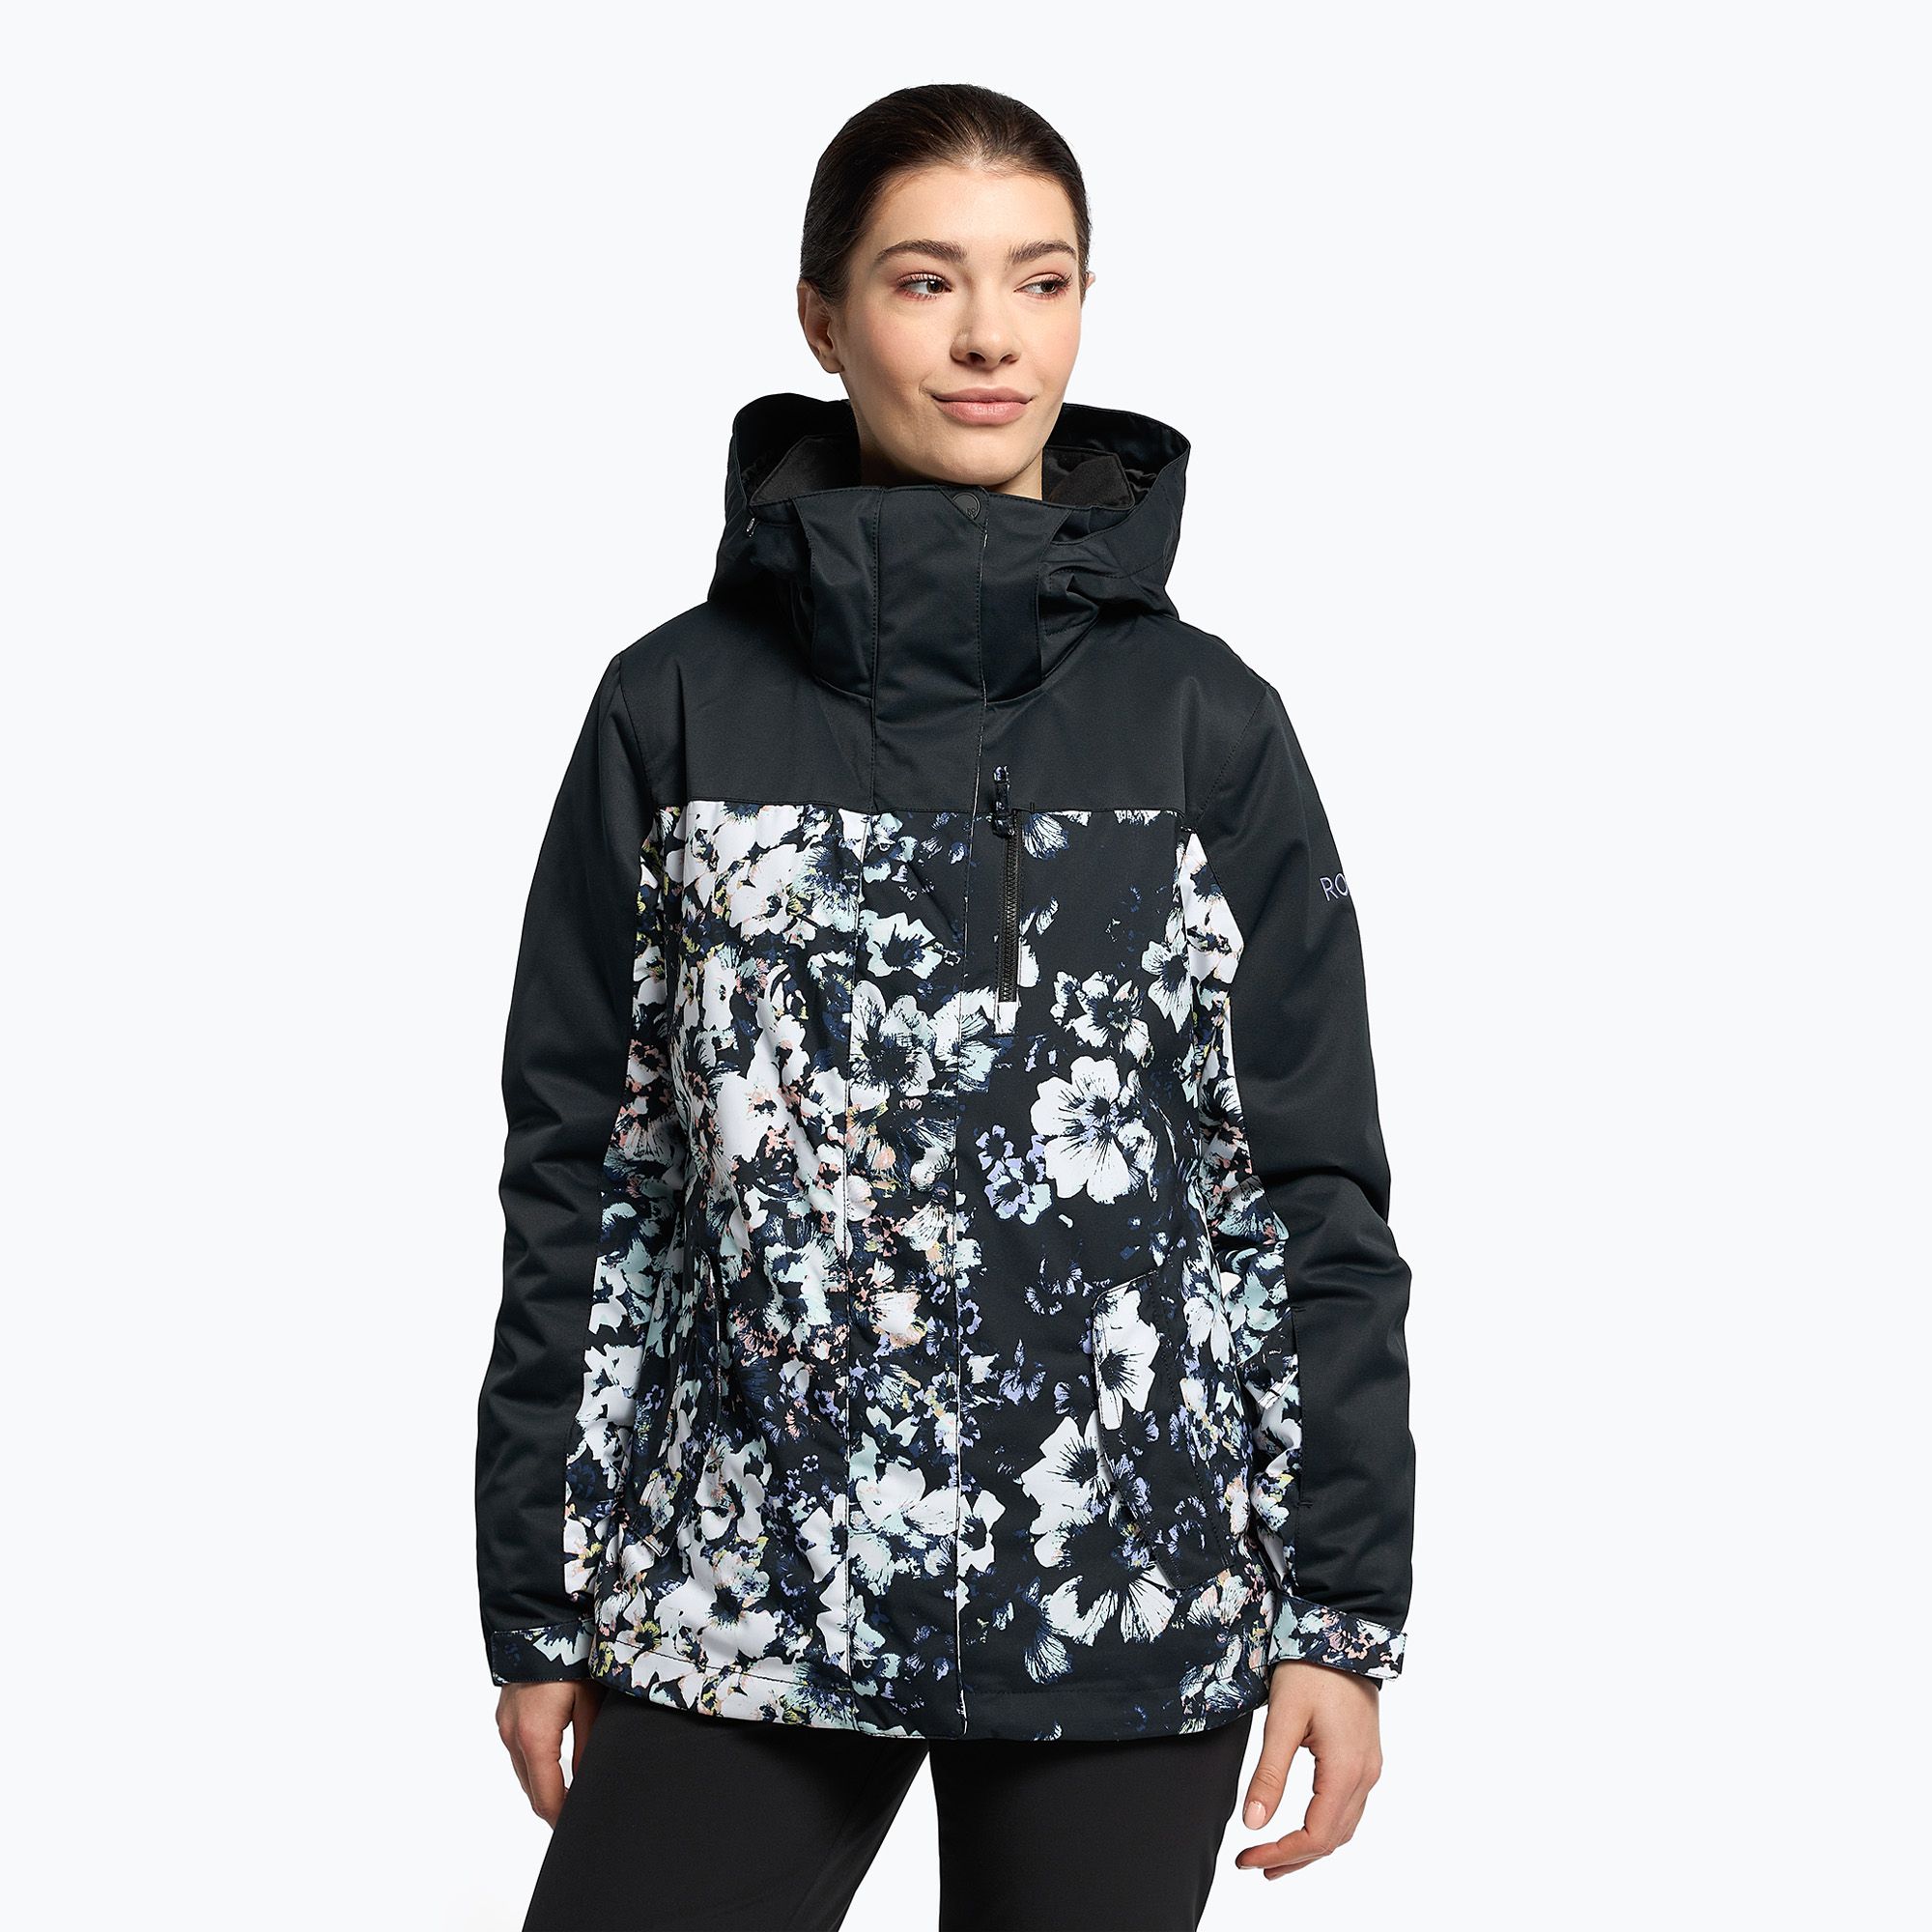 Women\'s snowboard jacket ROXY Jetty black 2021 true black Block flowers